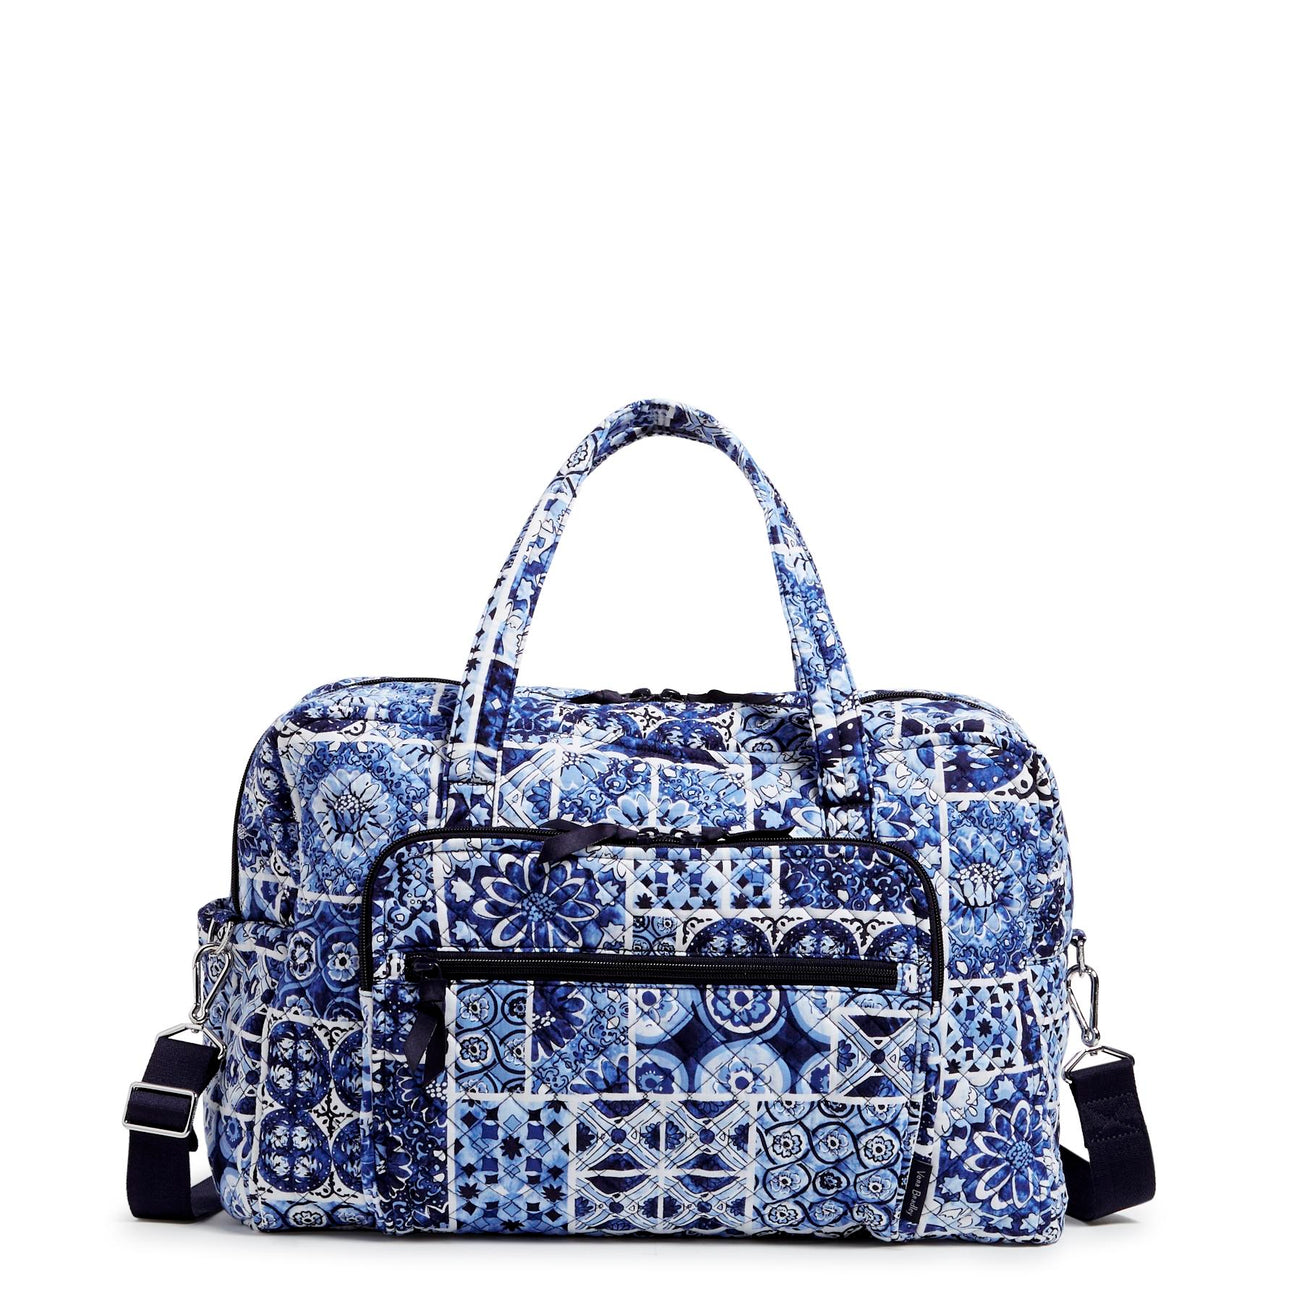 Weekender Travel Bag In Island Tile Blue